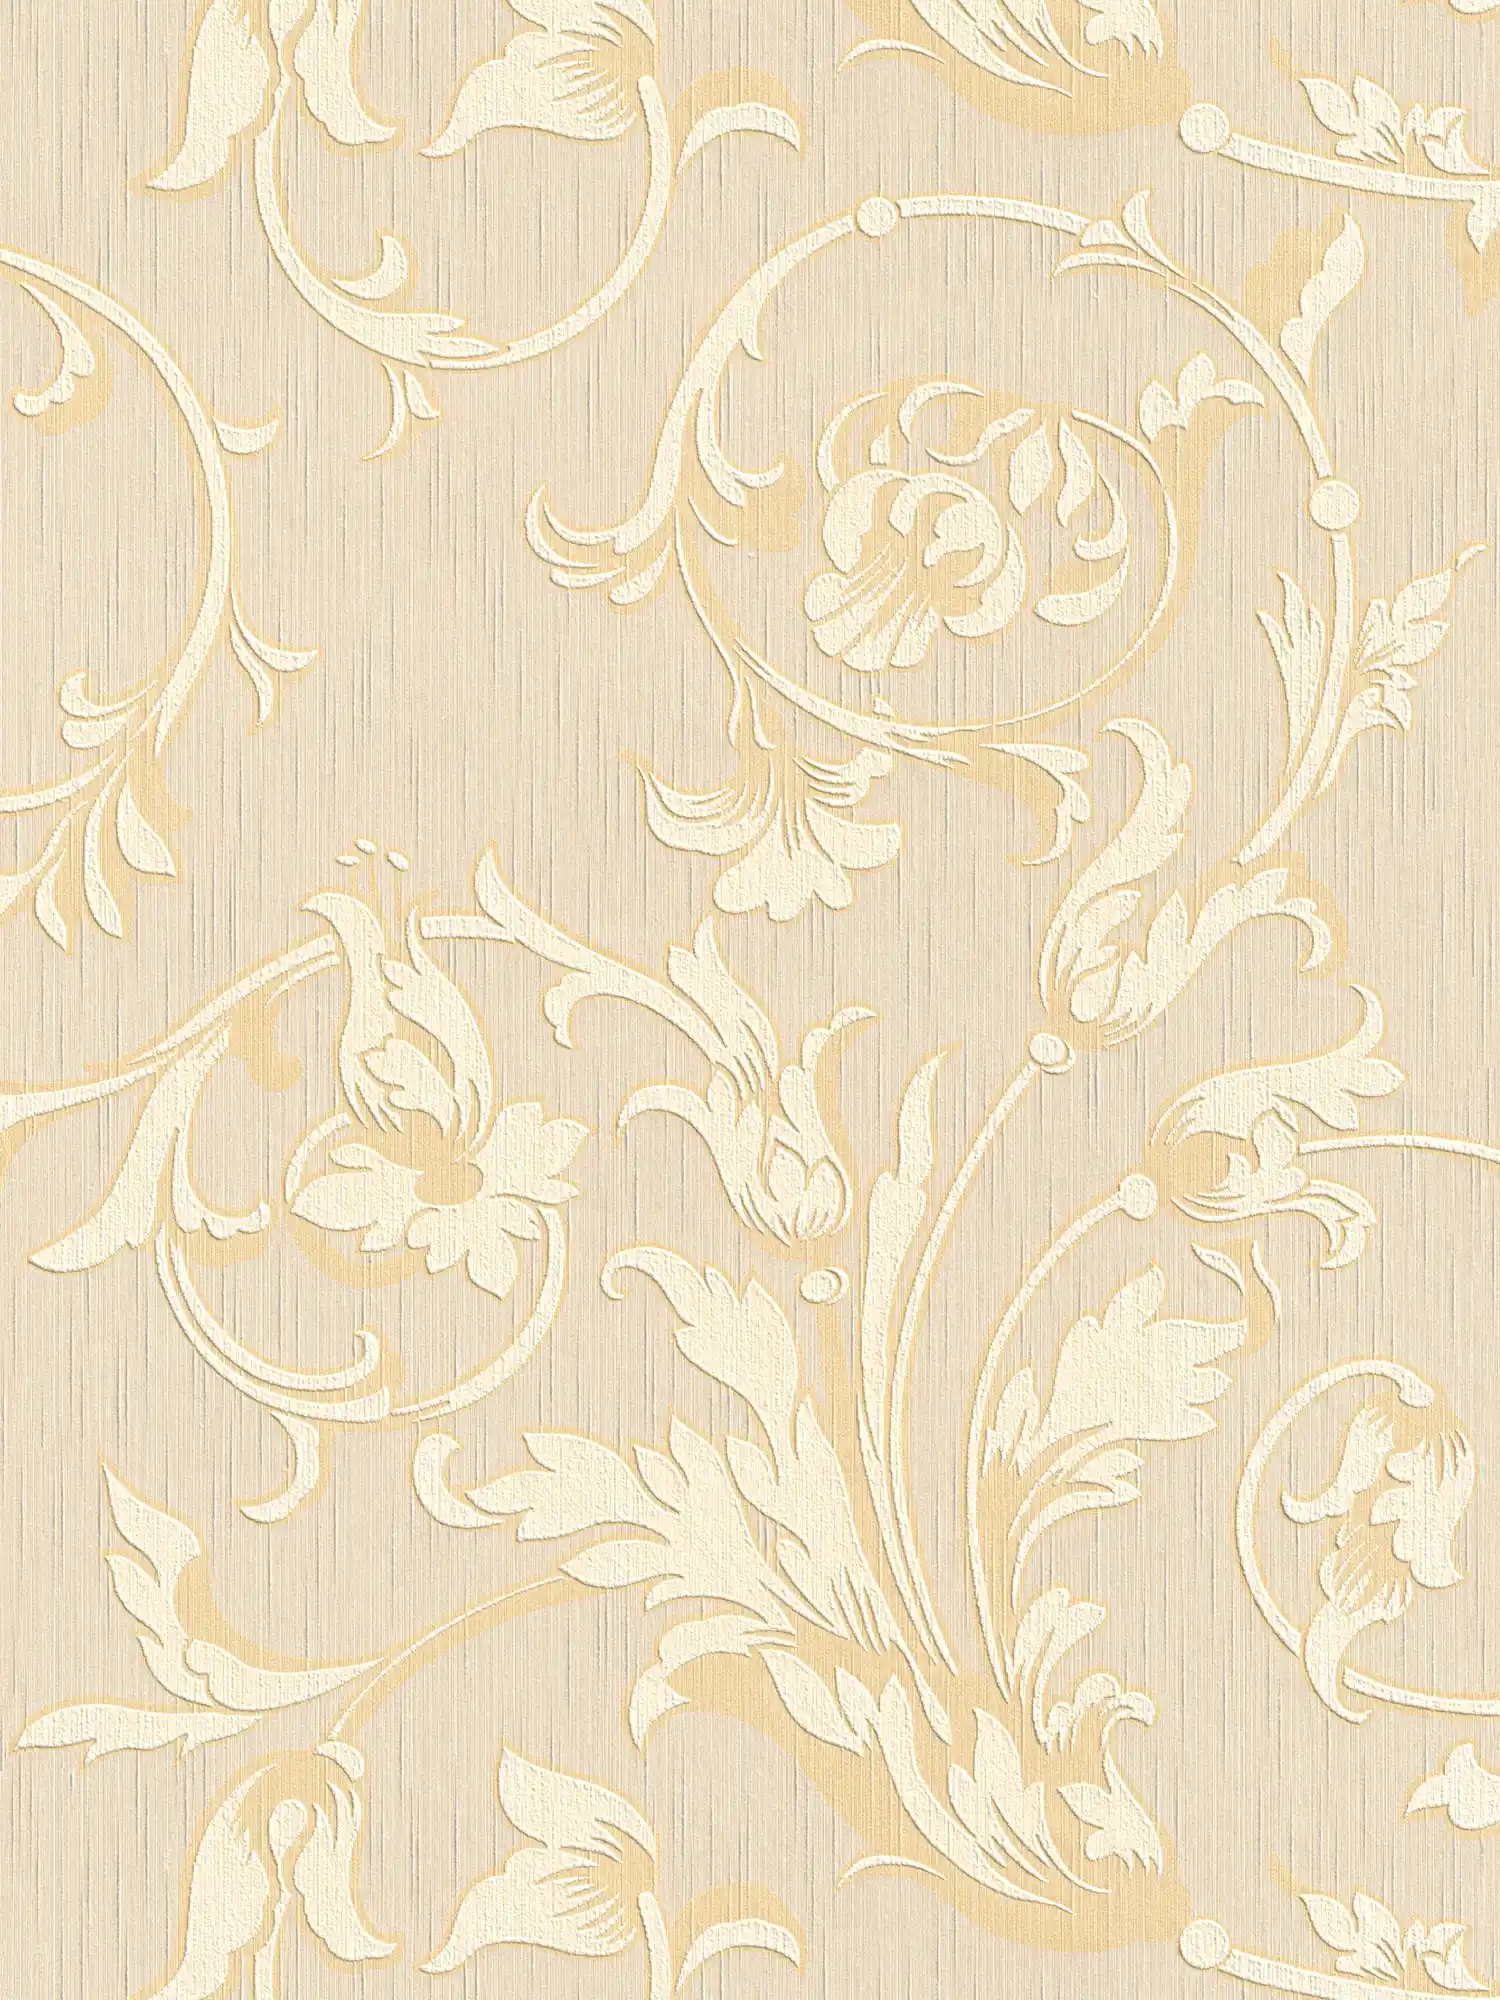 Ornamentbehang met zijdeglans - crème, goud, beige
